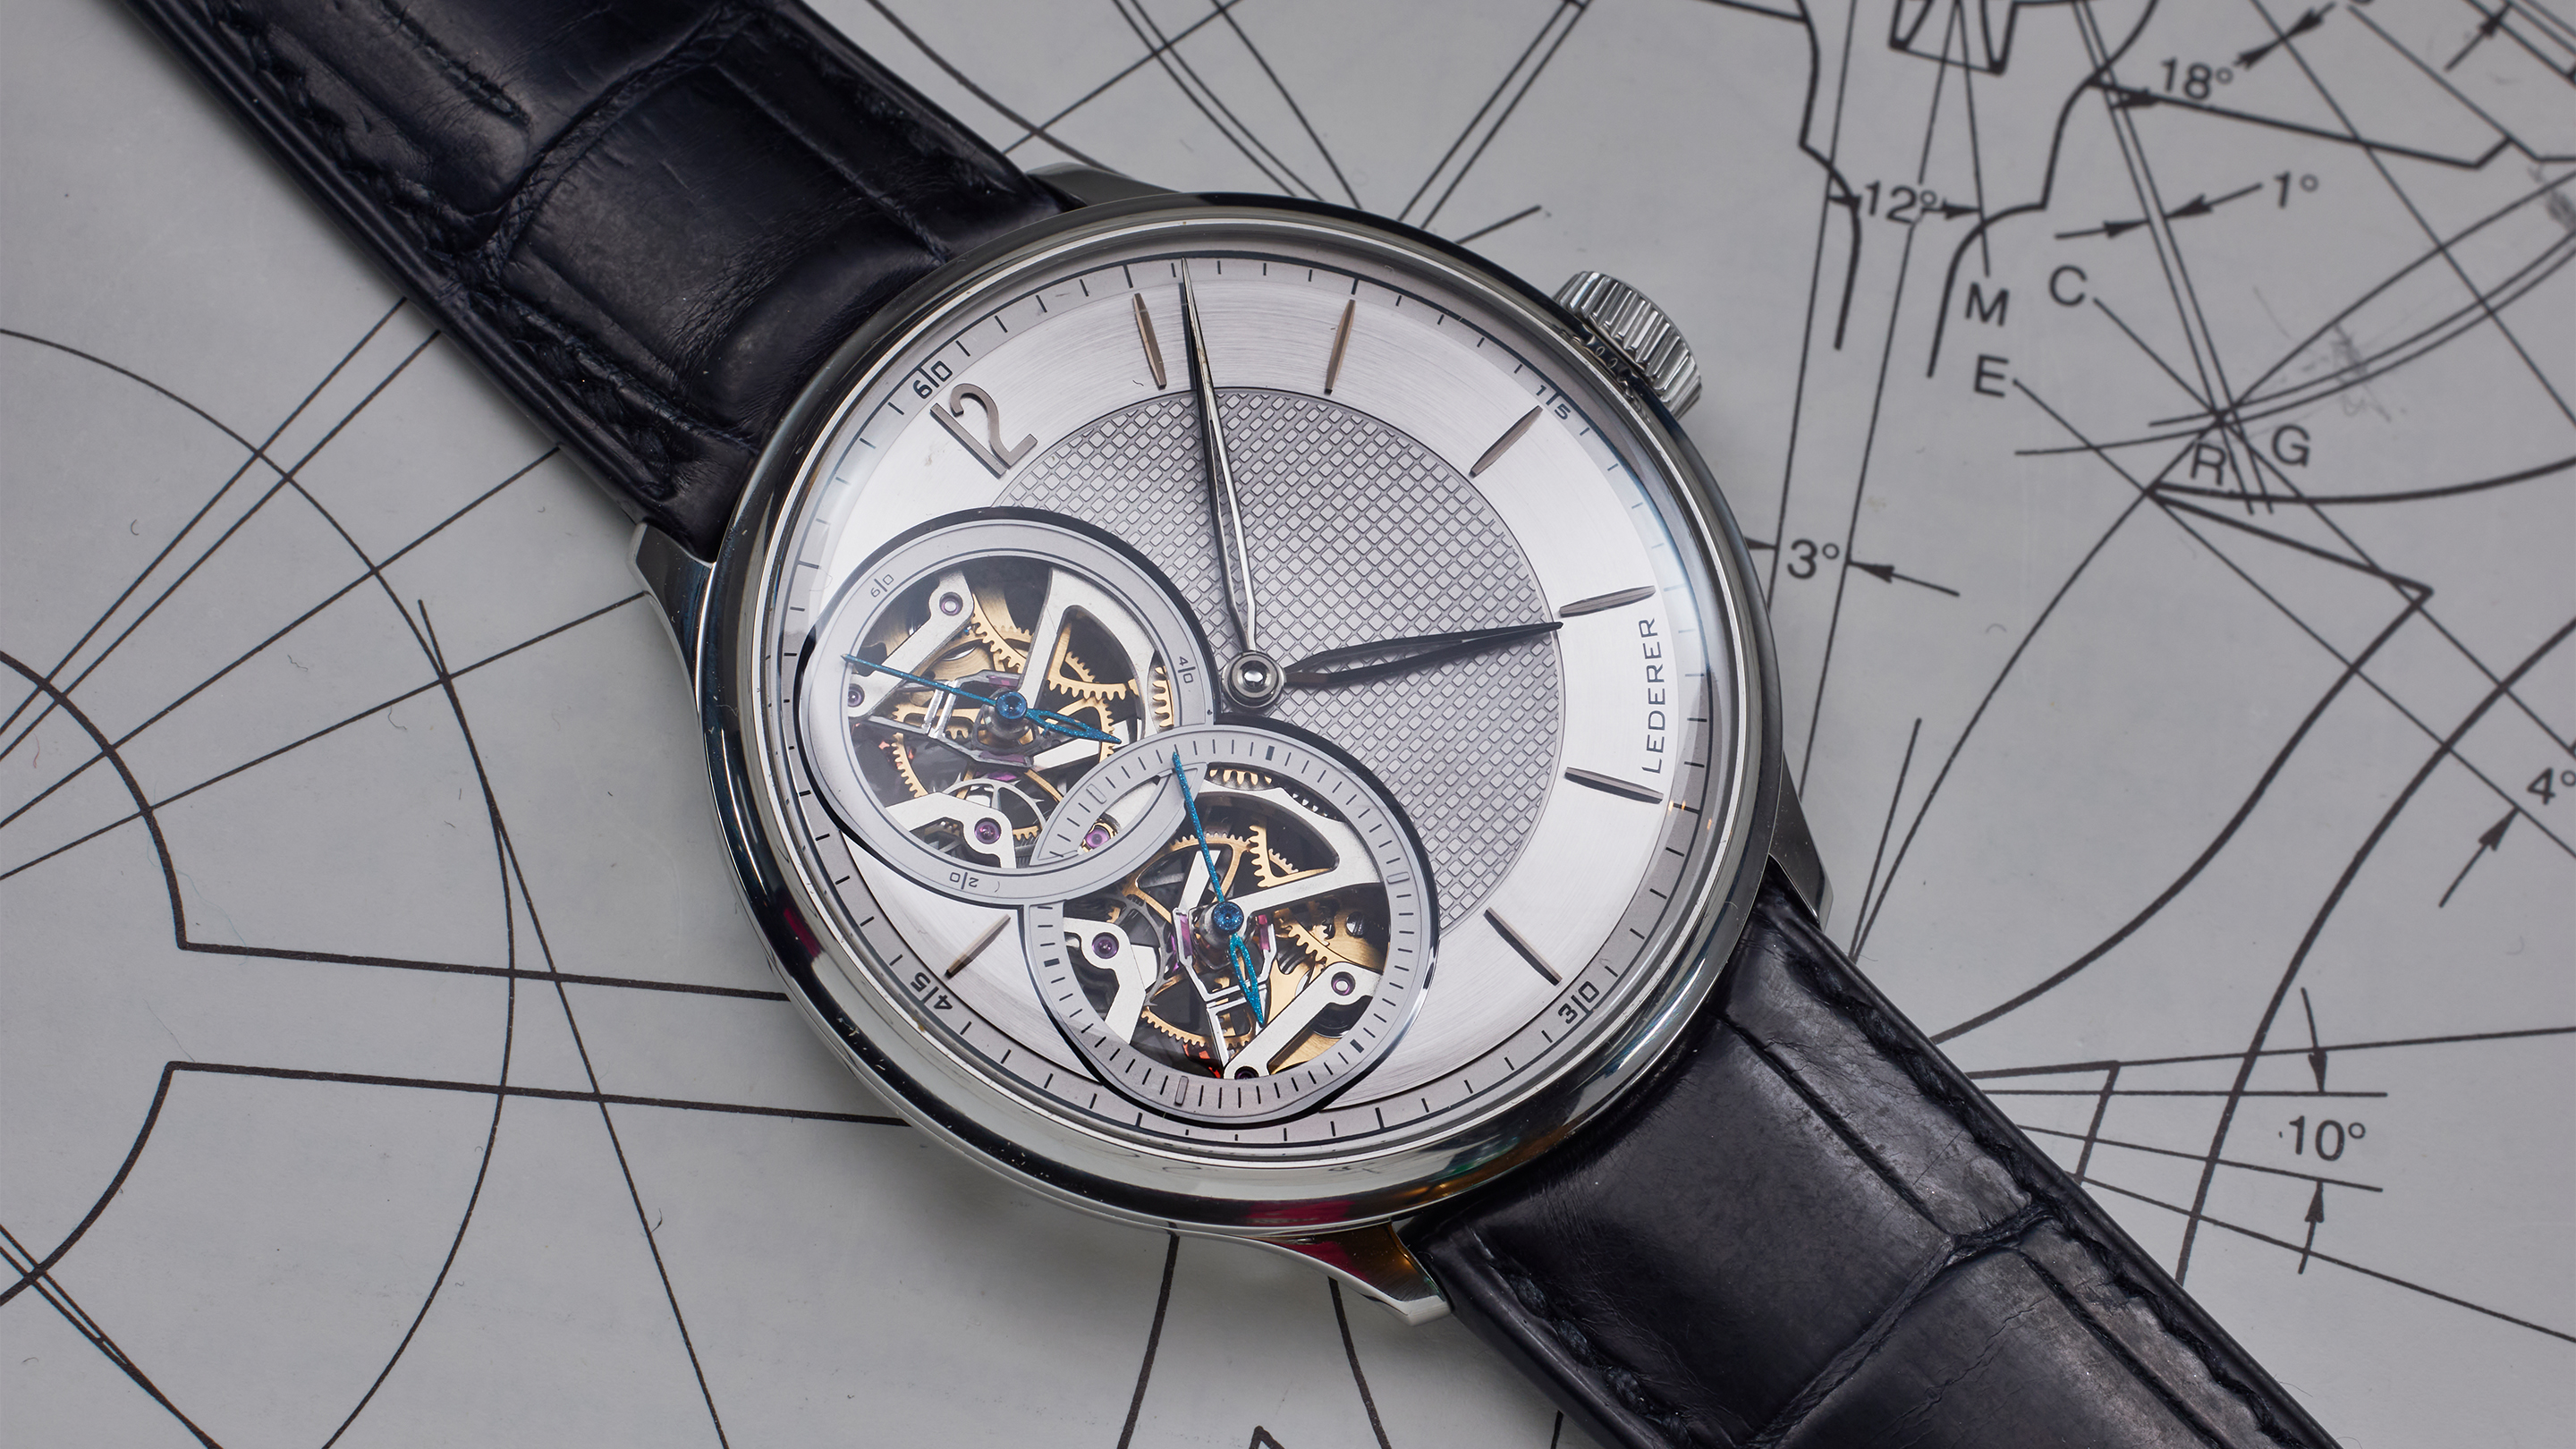 Bernhard Lederer's Central Impulse Chronometer Is A Game-Changer